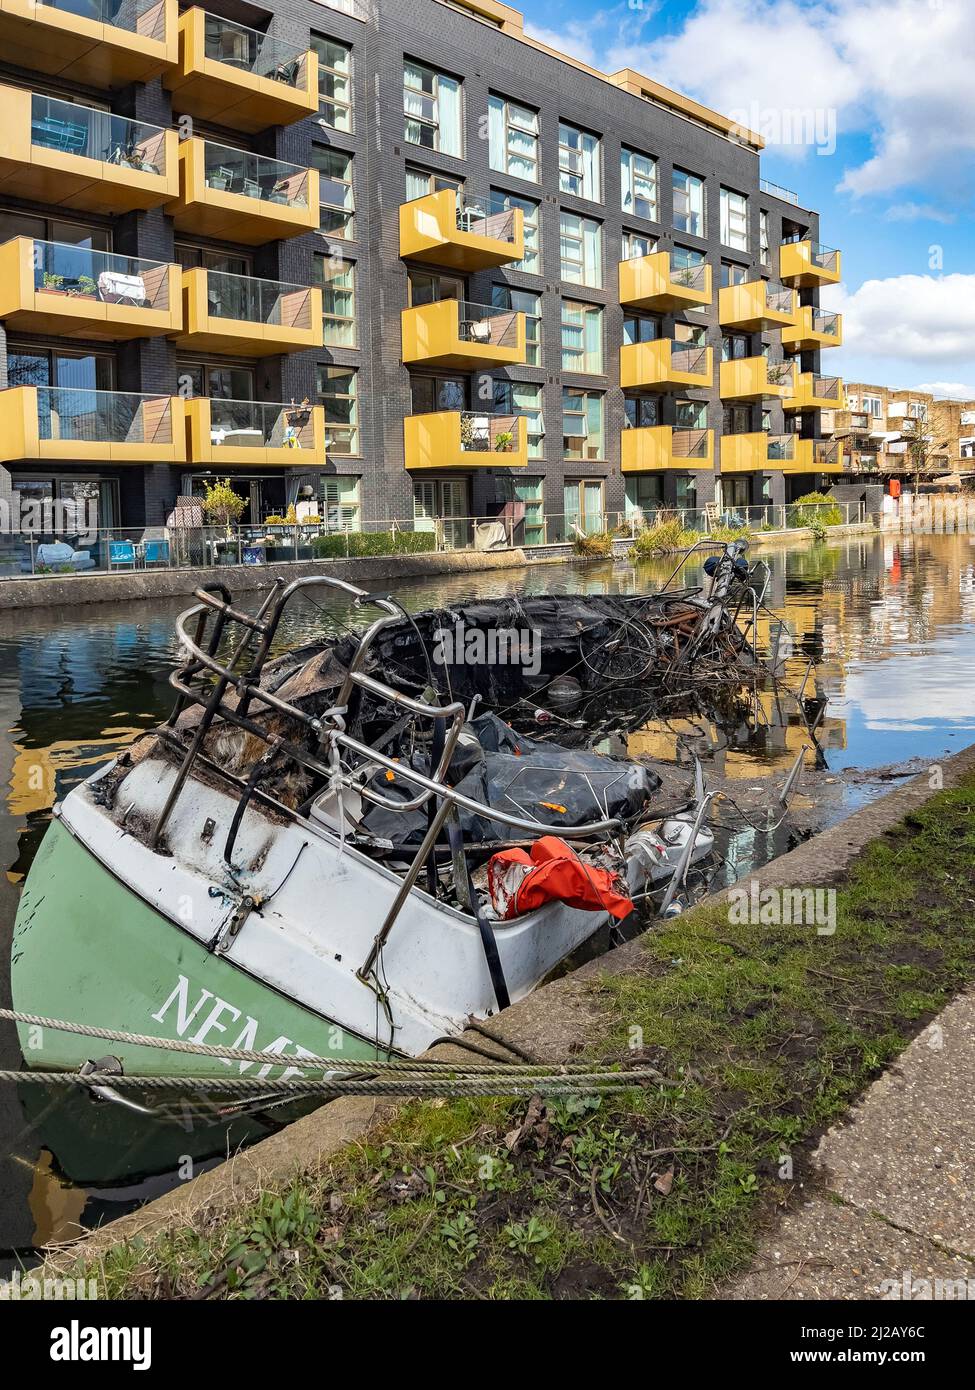 Ausgebrannte und verlassene Boote auf einem Canal Grande in der Nähe des Little Venice-Gebiets im Zentrum von London, Großbritannien. Stockfoto